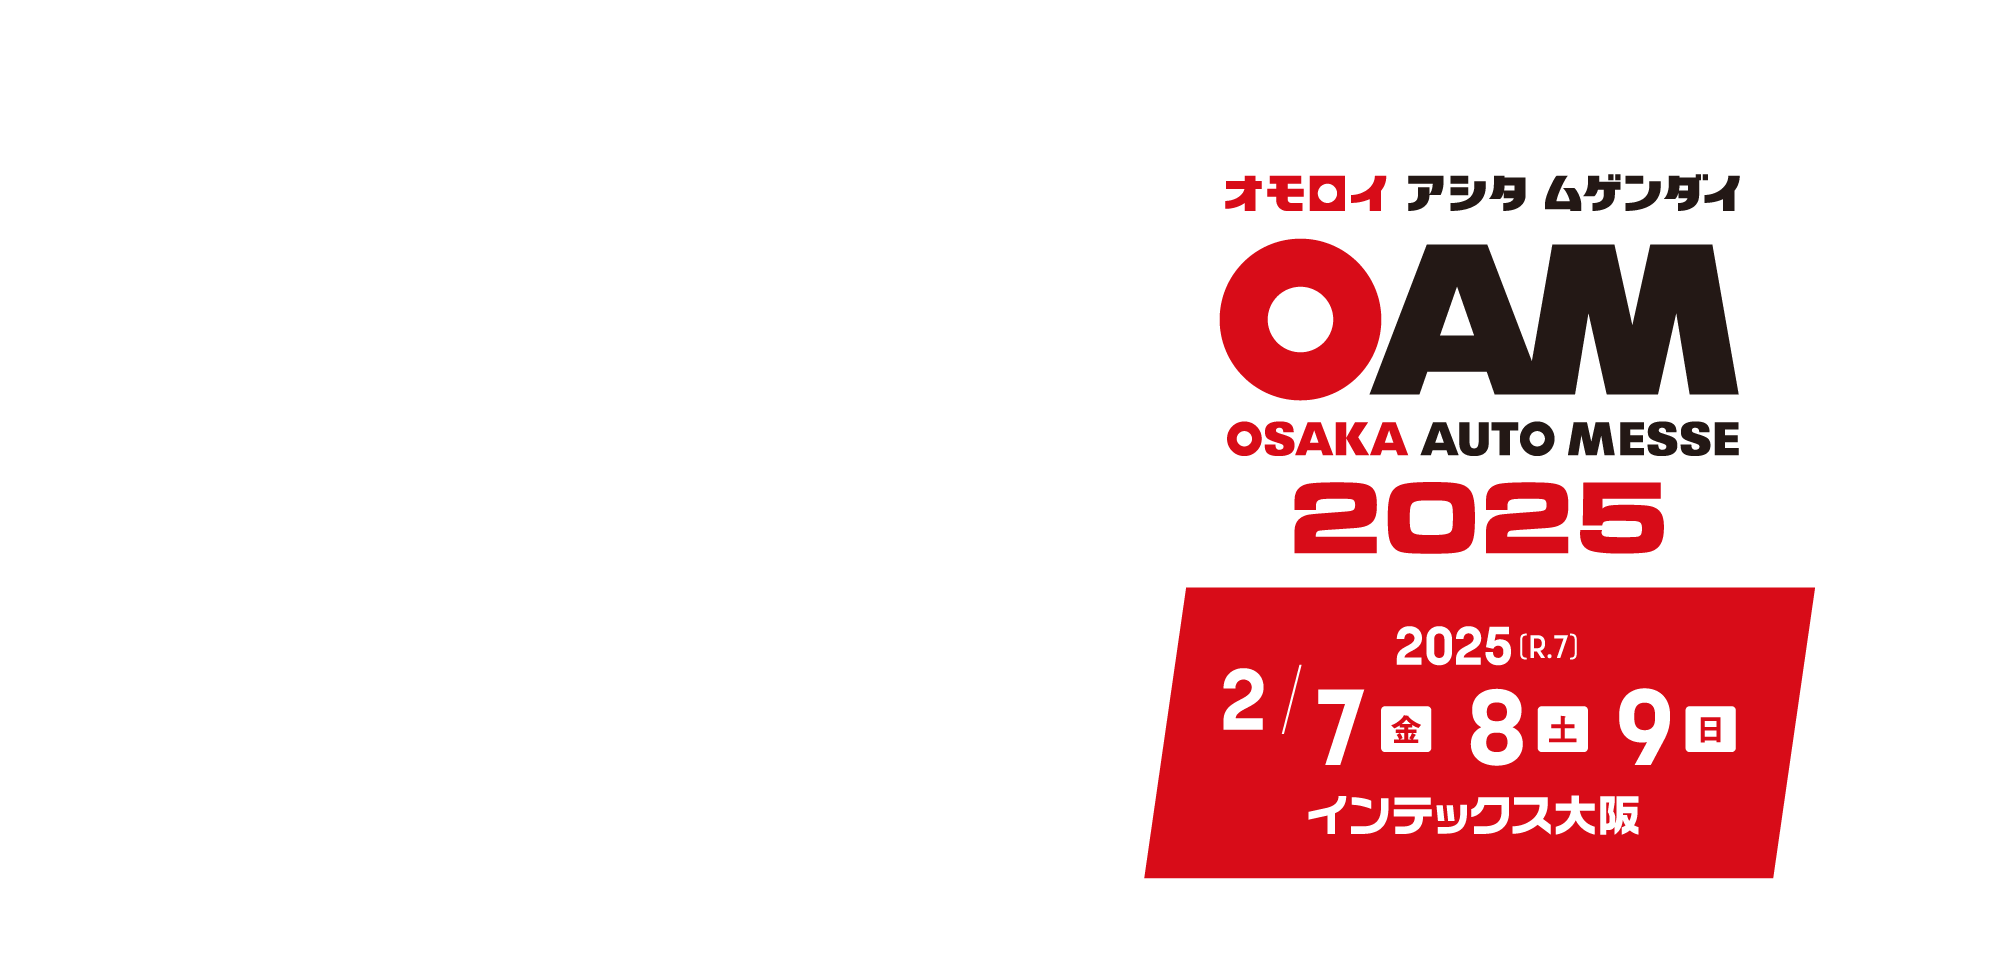 大阪オートメッセ2025 / オモロイ アシタ ムゲンダイ / 2025年2月7日(金)、8日(土)、9日(日)開催。